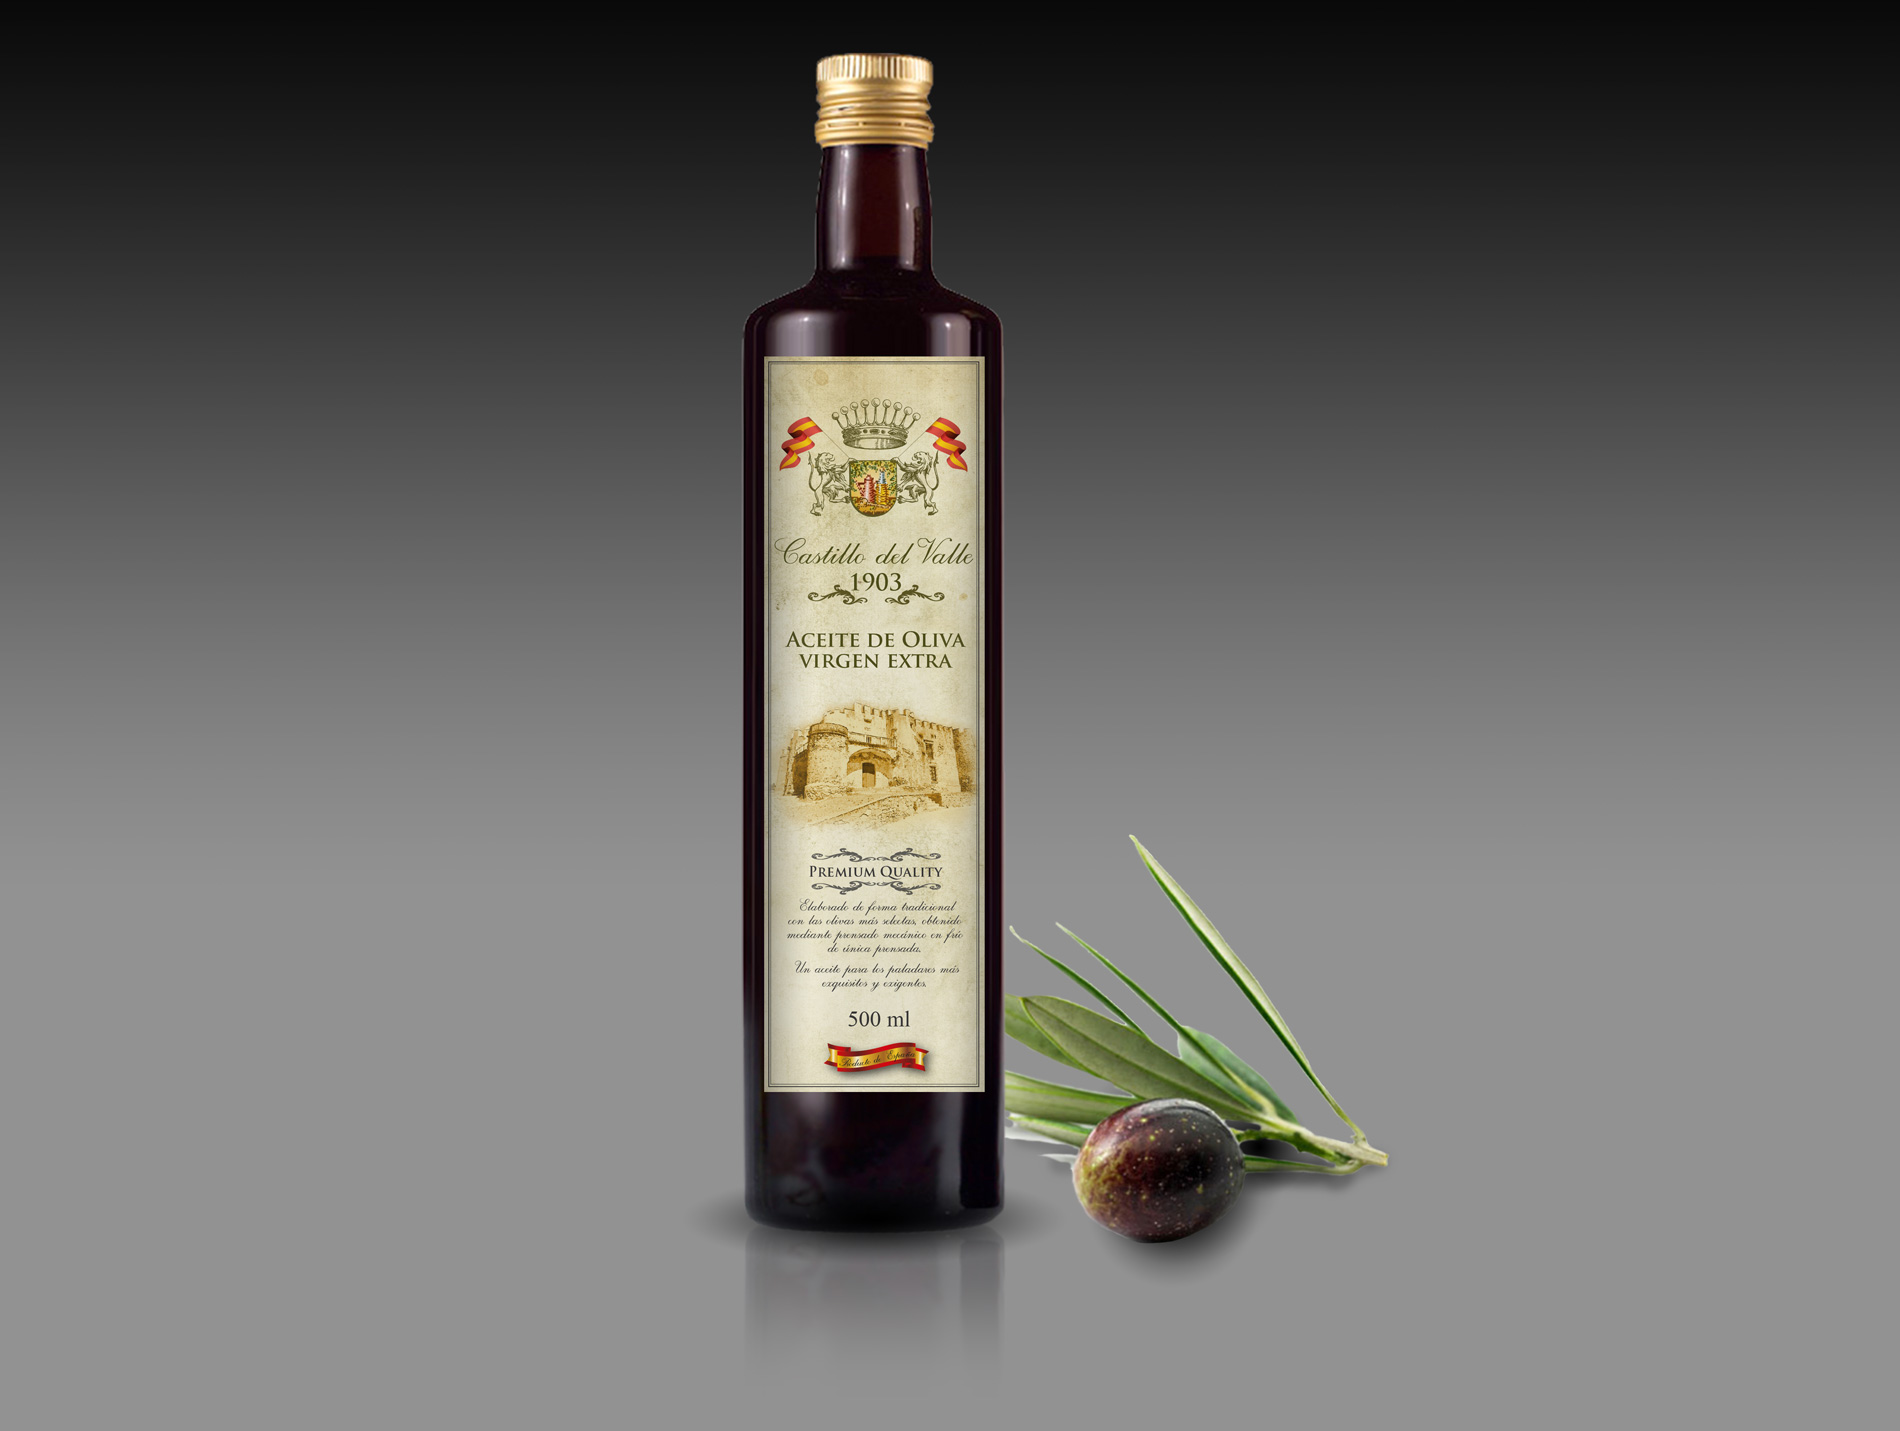 Diseño gráfico y creativo de etiquetas de aceite de oliva virgen extra para la marca CASTILLO DEL VALLE